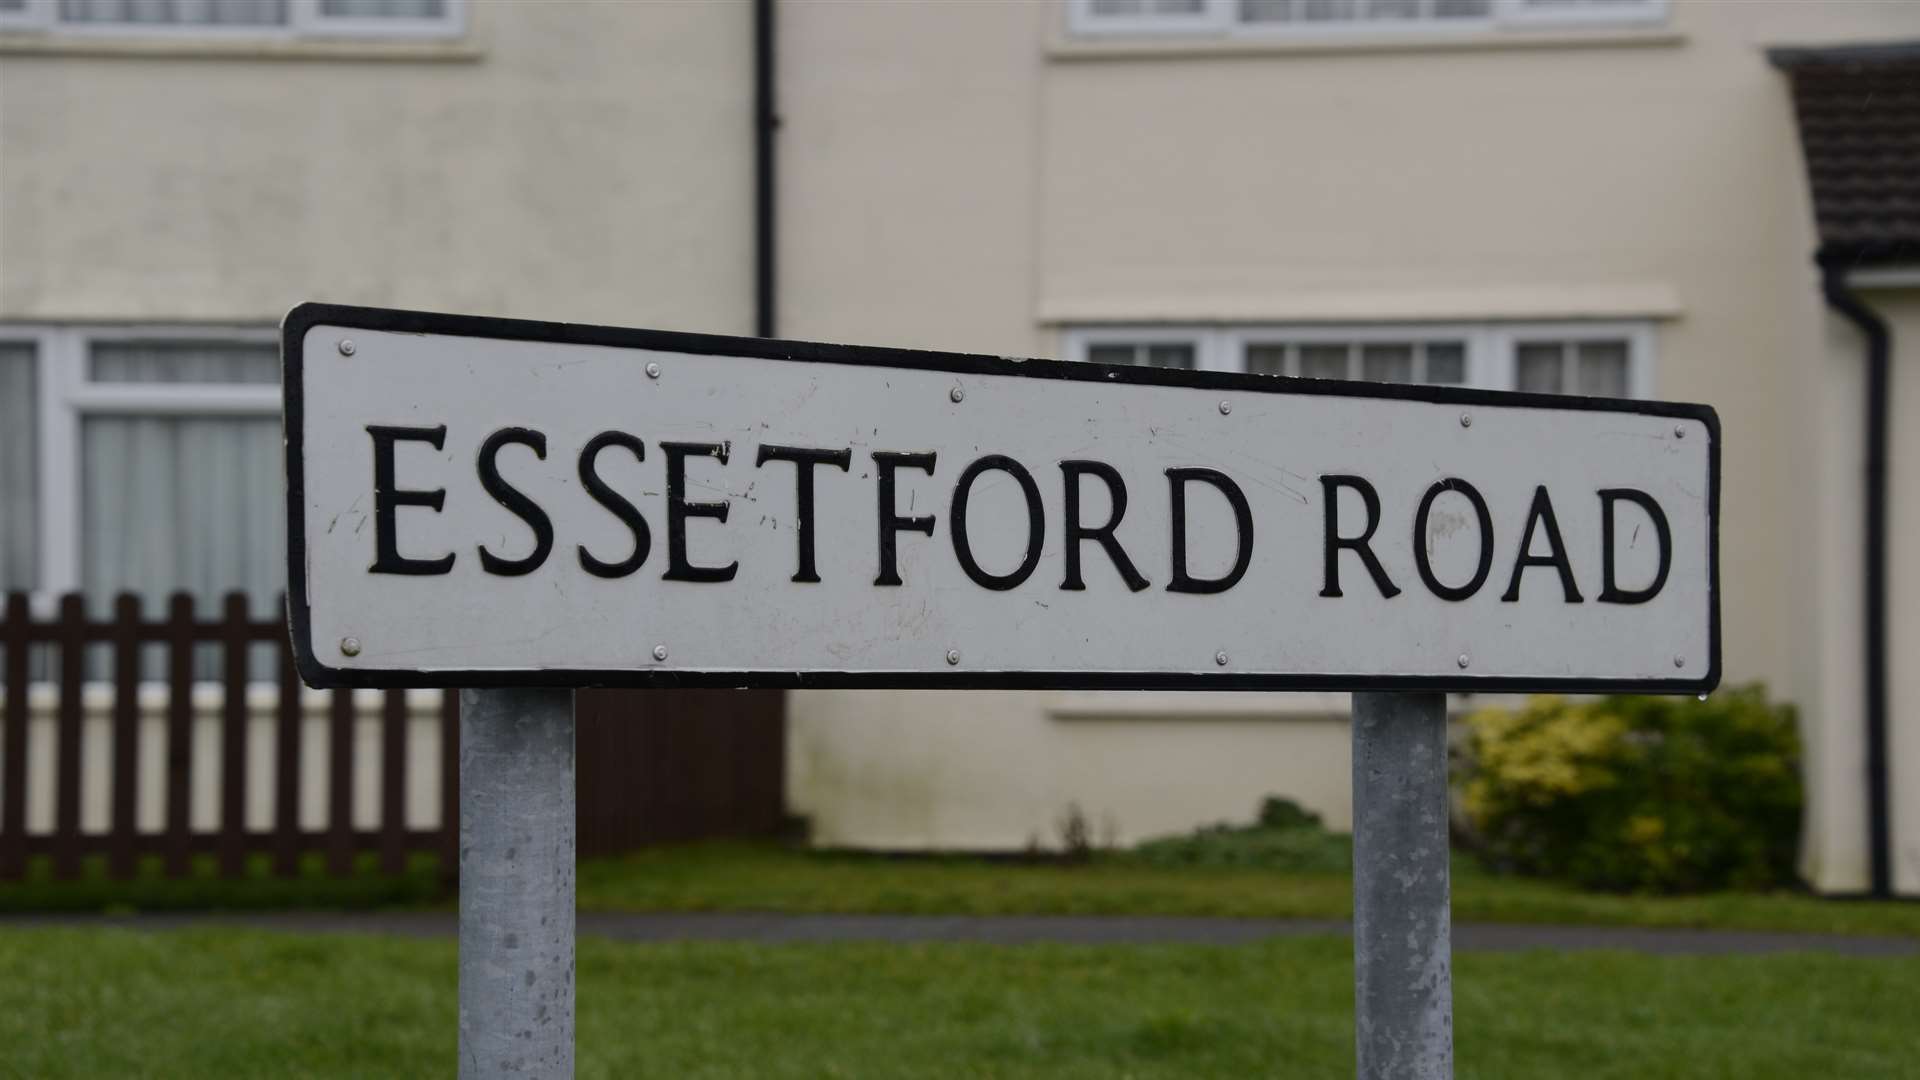 Police were called to a disturbance in Essetford Road